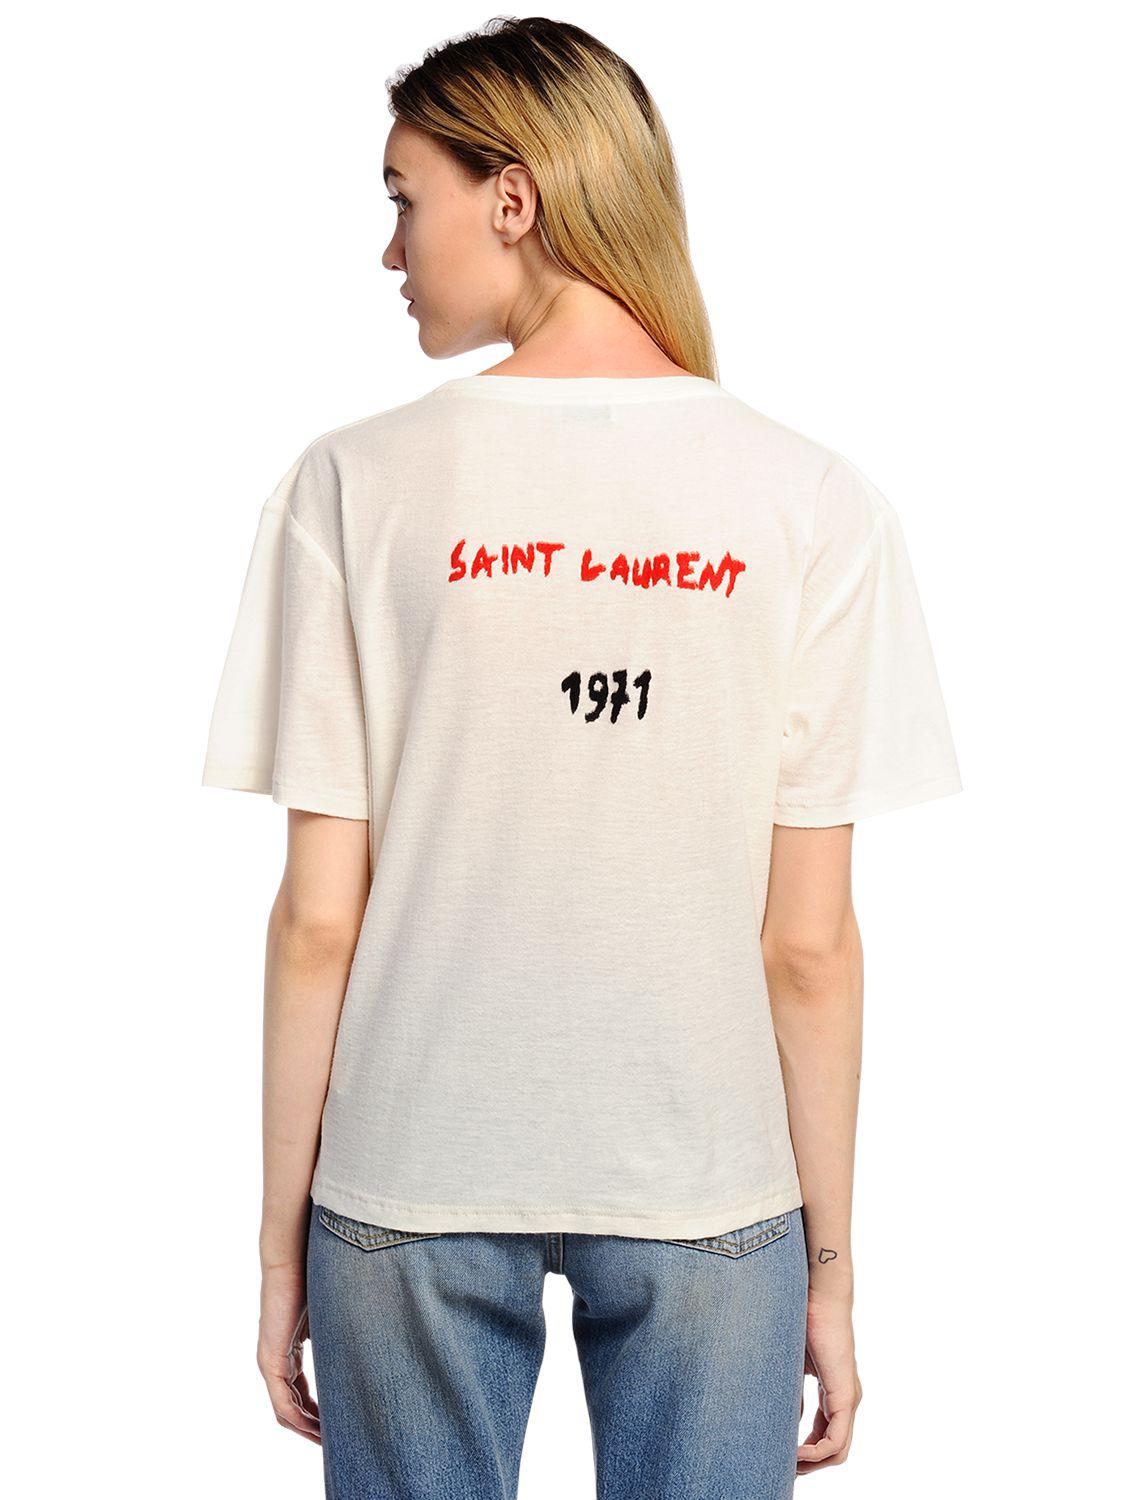 saint laurent 1971 t shirt